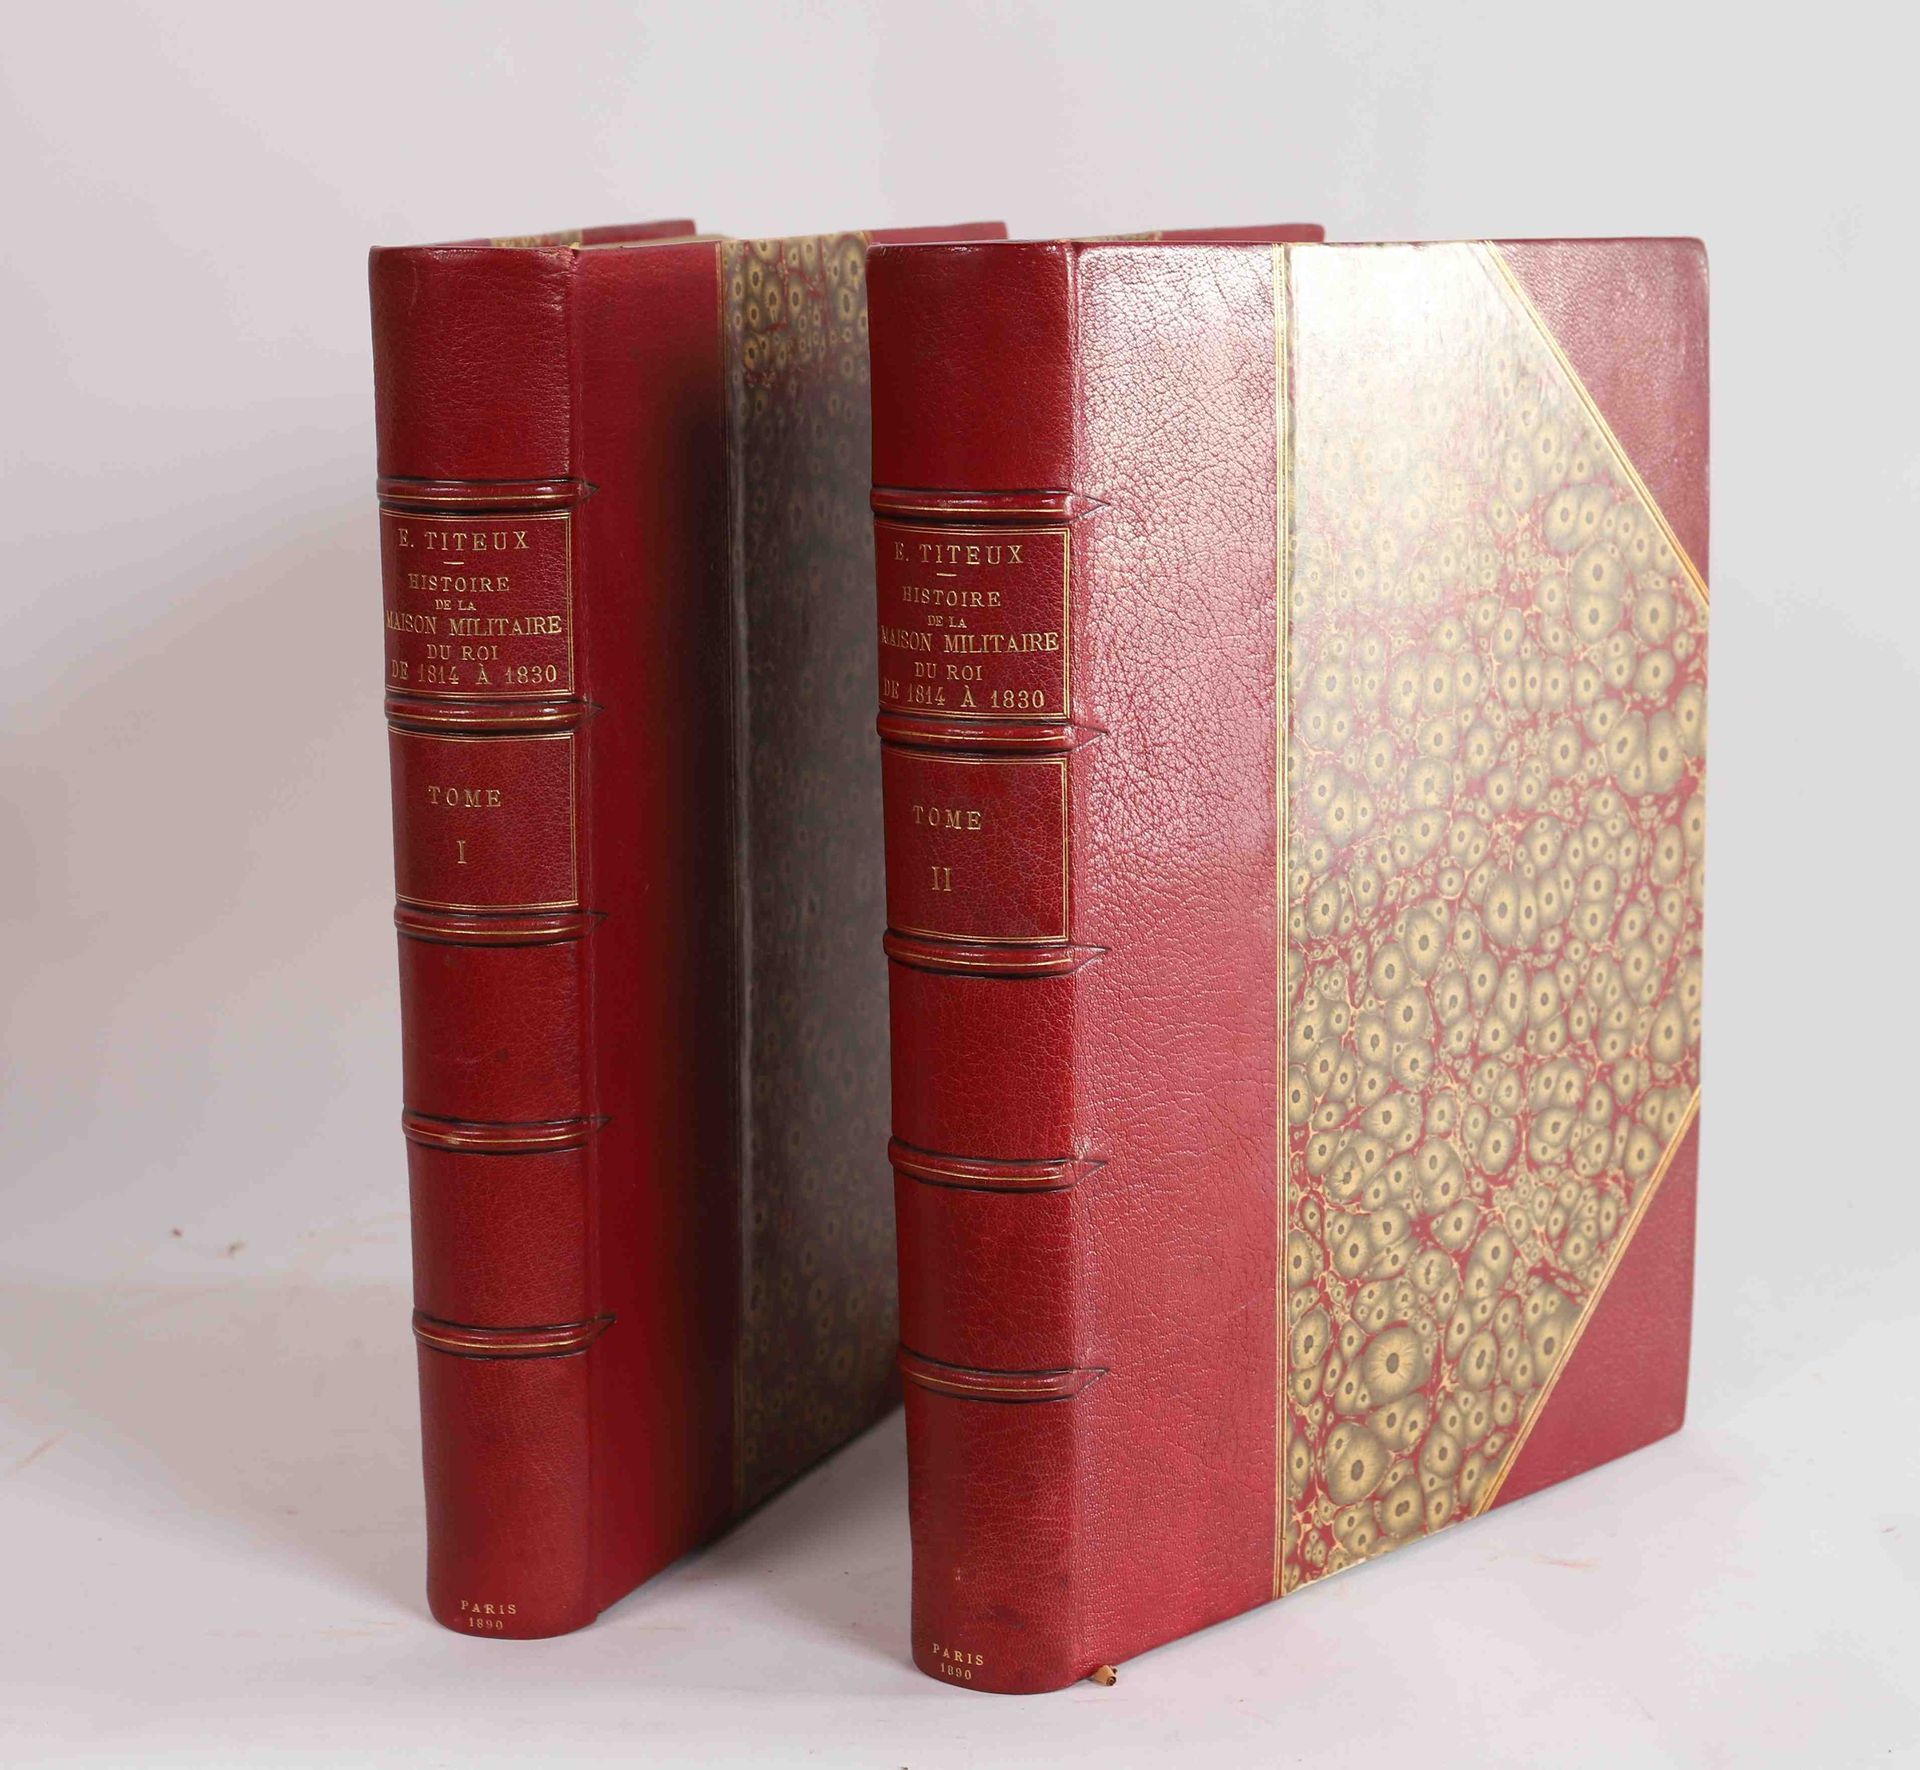 Null 欧仁-泰特克斯 (1838-1904)

从1814年到1830年的国王军户史。

两卷

波德利等人编著，巴黎1890年

编号为112/500

&hellip;